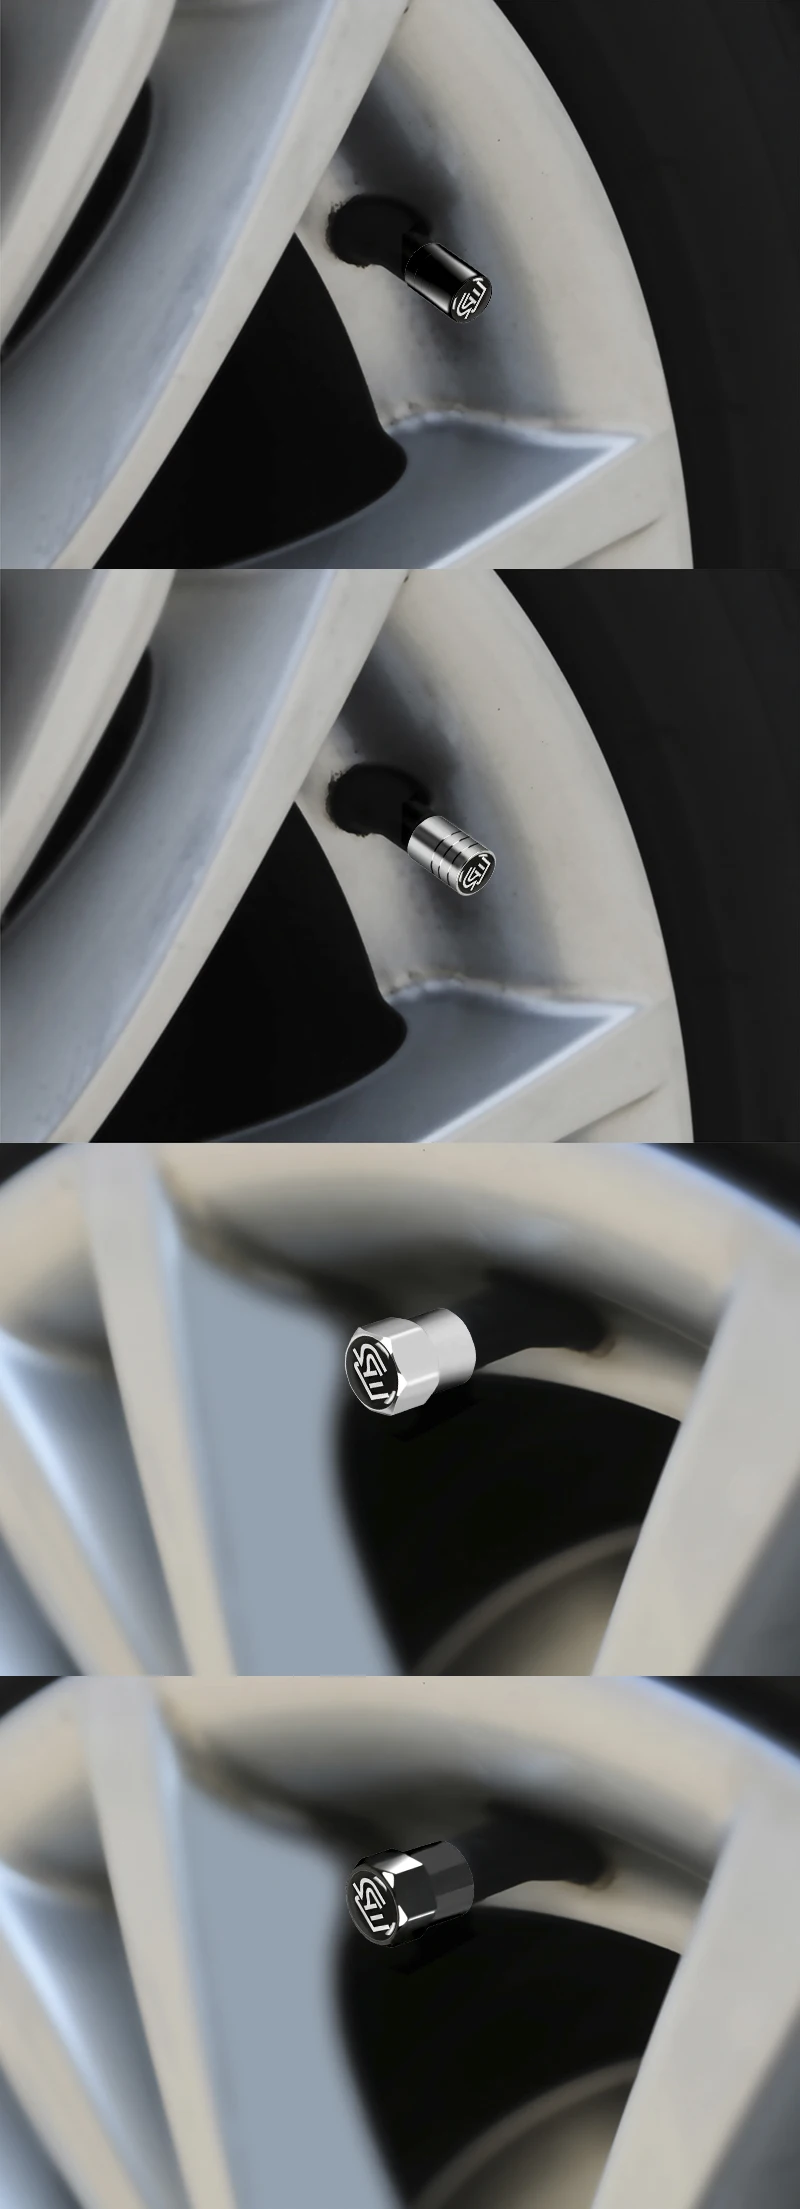 4 шт./компл. стайлинга автомобилей Стикеры Металл колеса автомобиля Шины вентиль, крышка автомобиля эмблемы для MS Mazda 2 3 5 6 CX-5 CX-9 автомобильные аксессуары